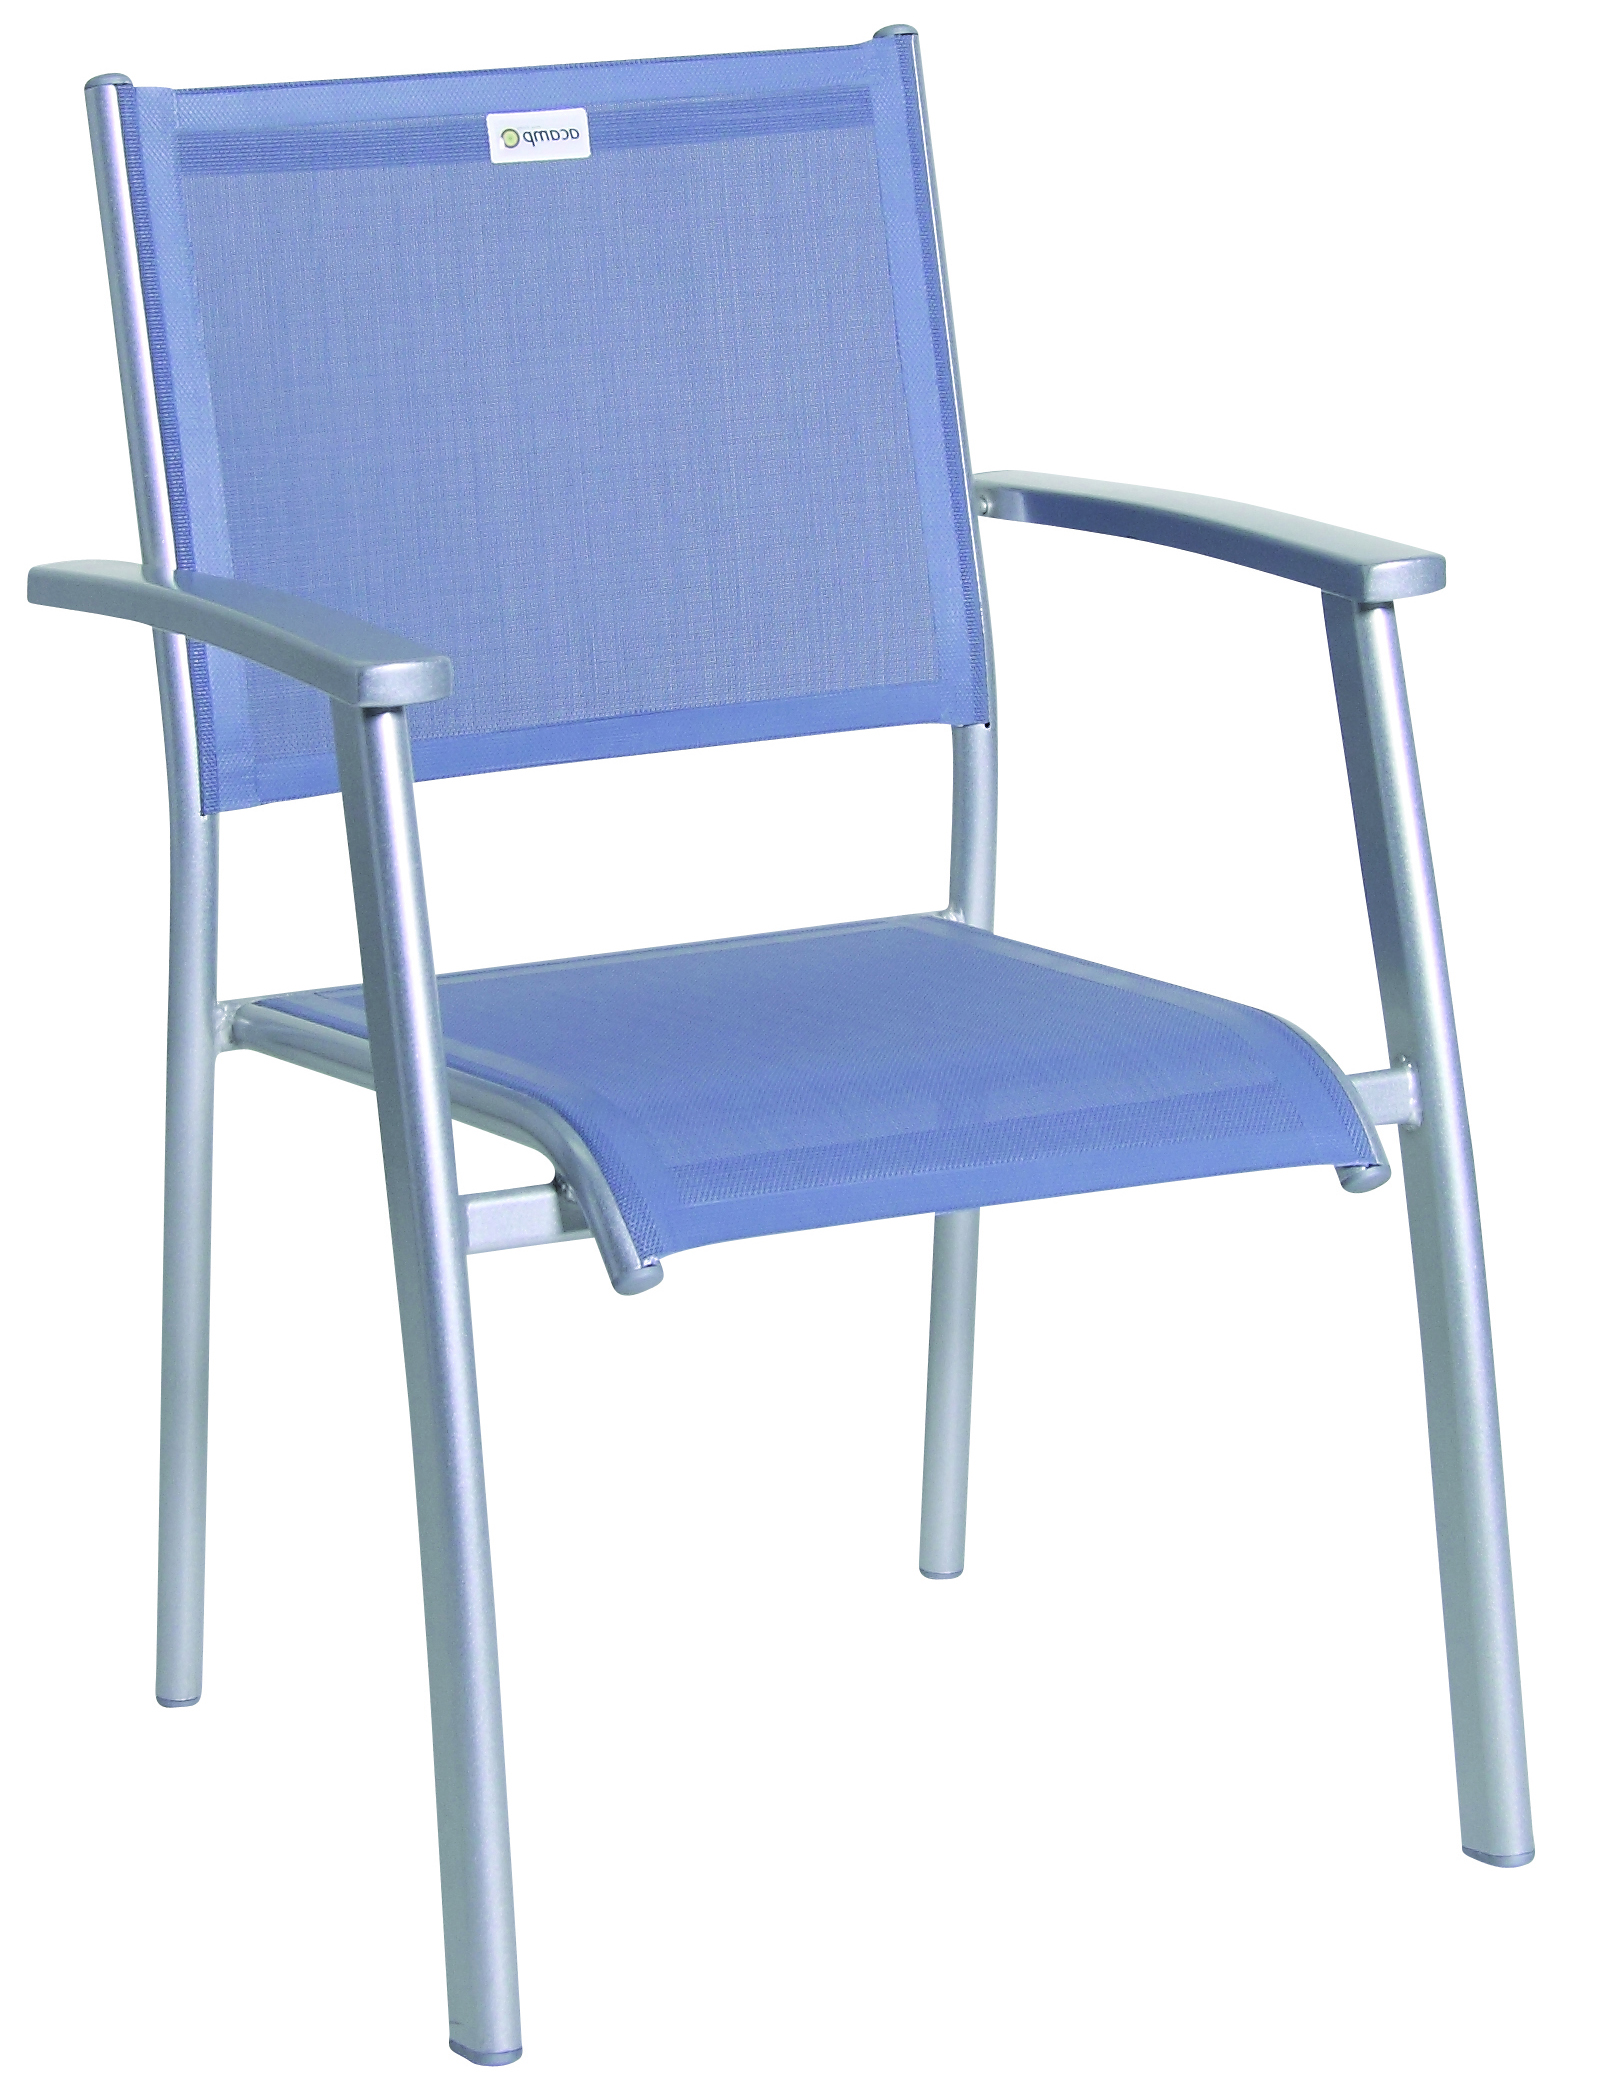 Platina szinü acamp lábvégkupak Acatop rakatolható székhez 2x 40x25mm 2x 27mm átmérö